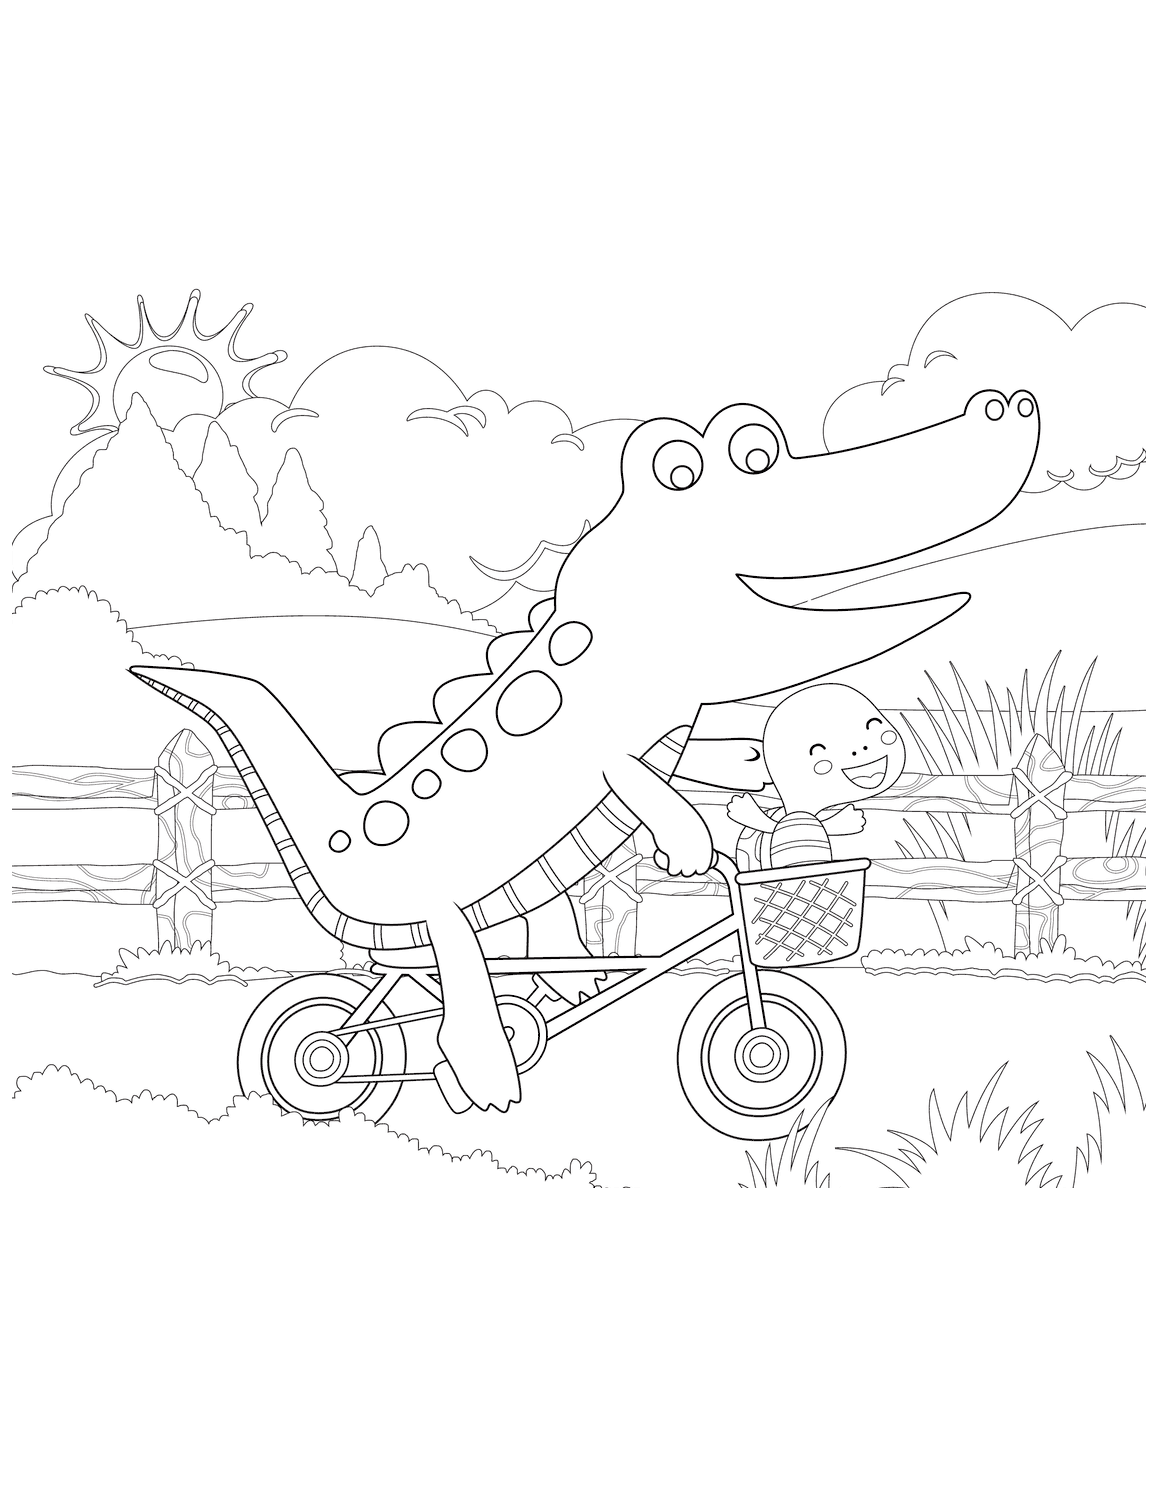 Dibujo de cocodrilo en bicicleta para colorear 